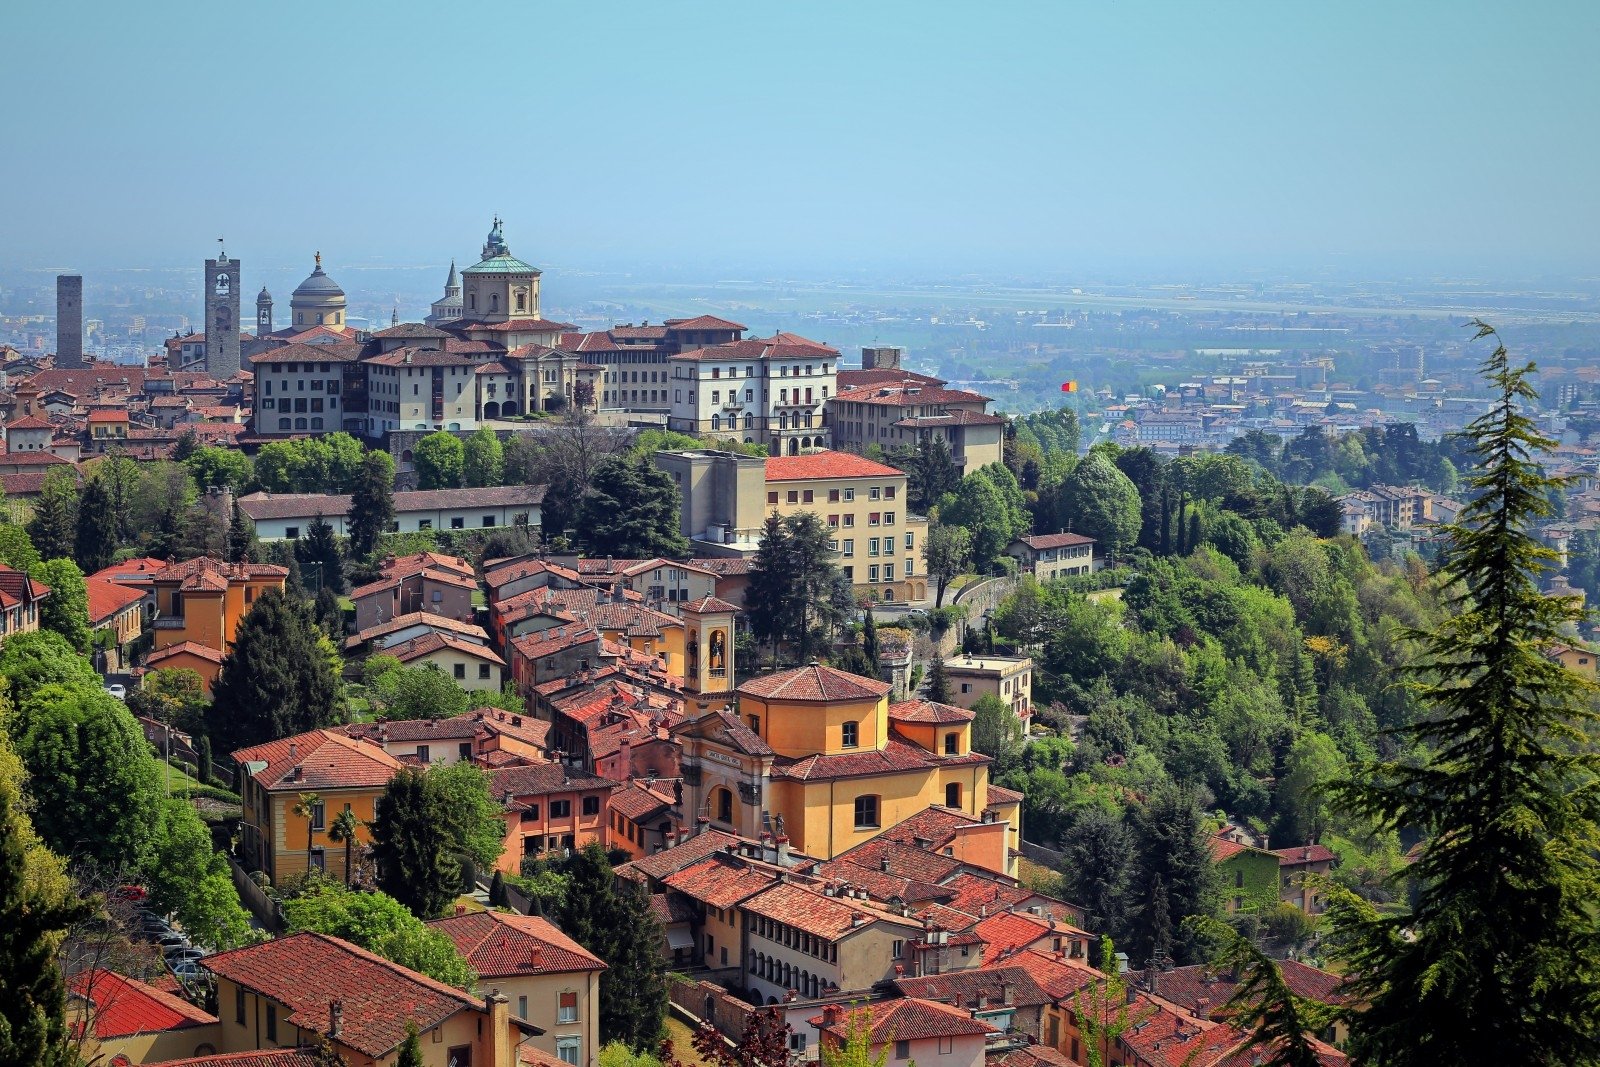 Darbo pasiūlymai namuose bergamo mieste, Bergamo dirba namuose